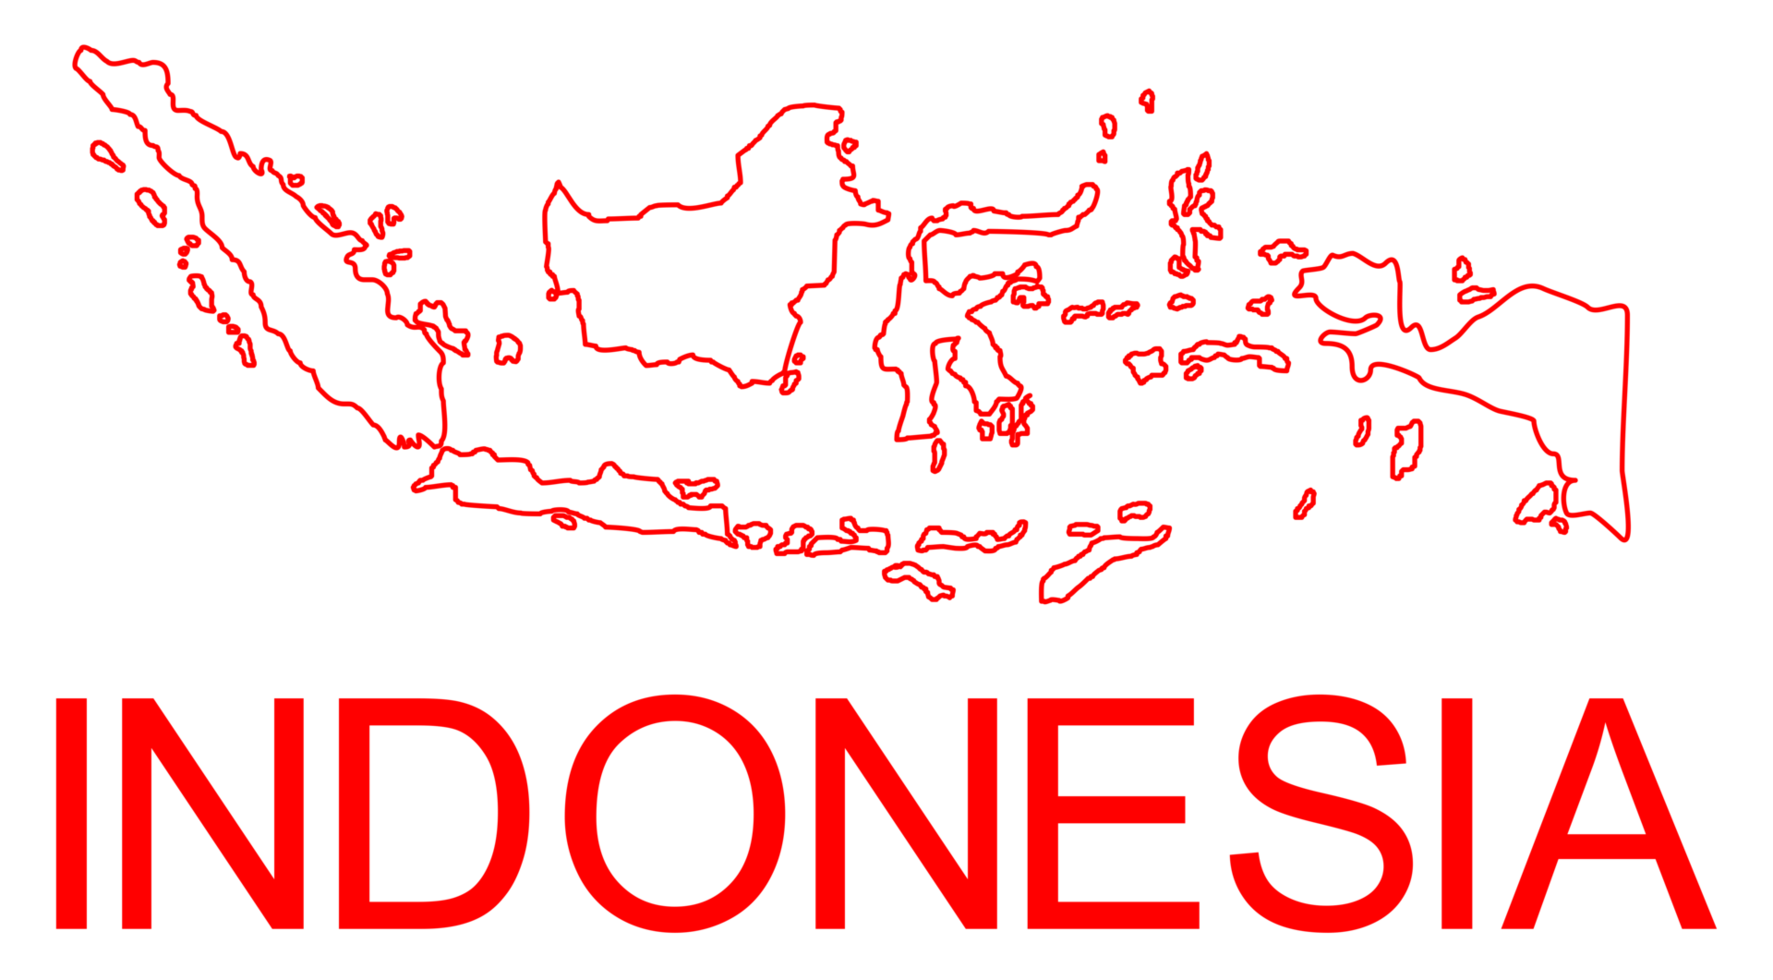 Indonesië kaart voor app, kunst illustratie, website, pictogram, infographic of grafisch ontwerp element. formaat PNG